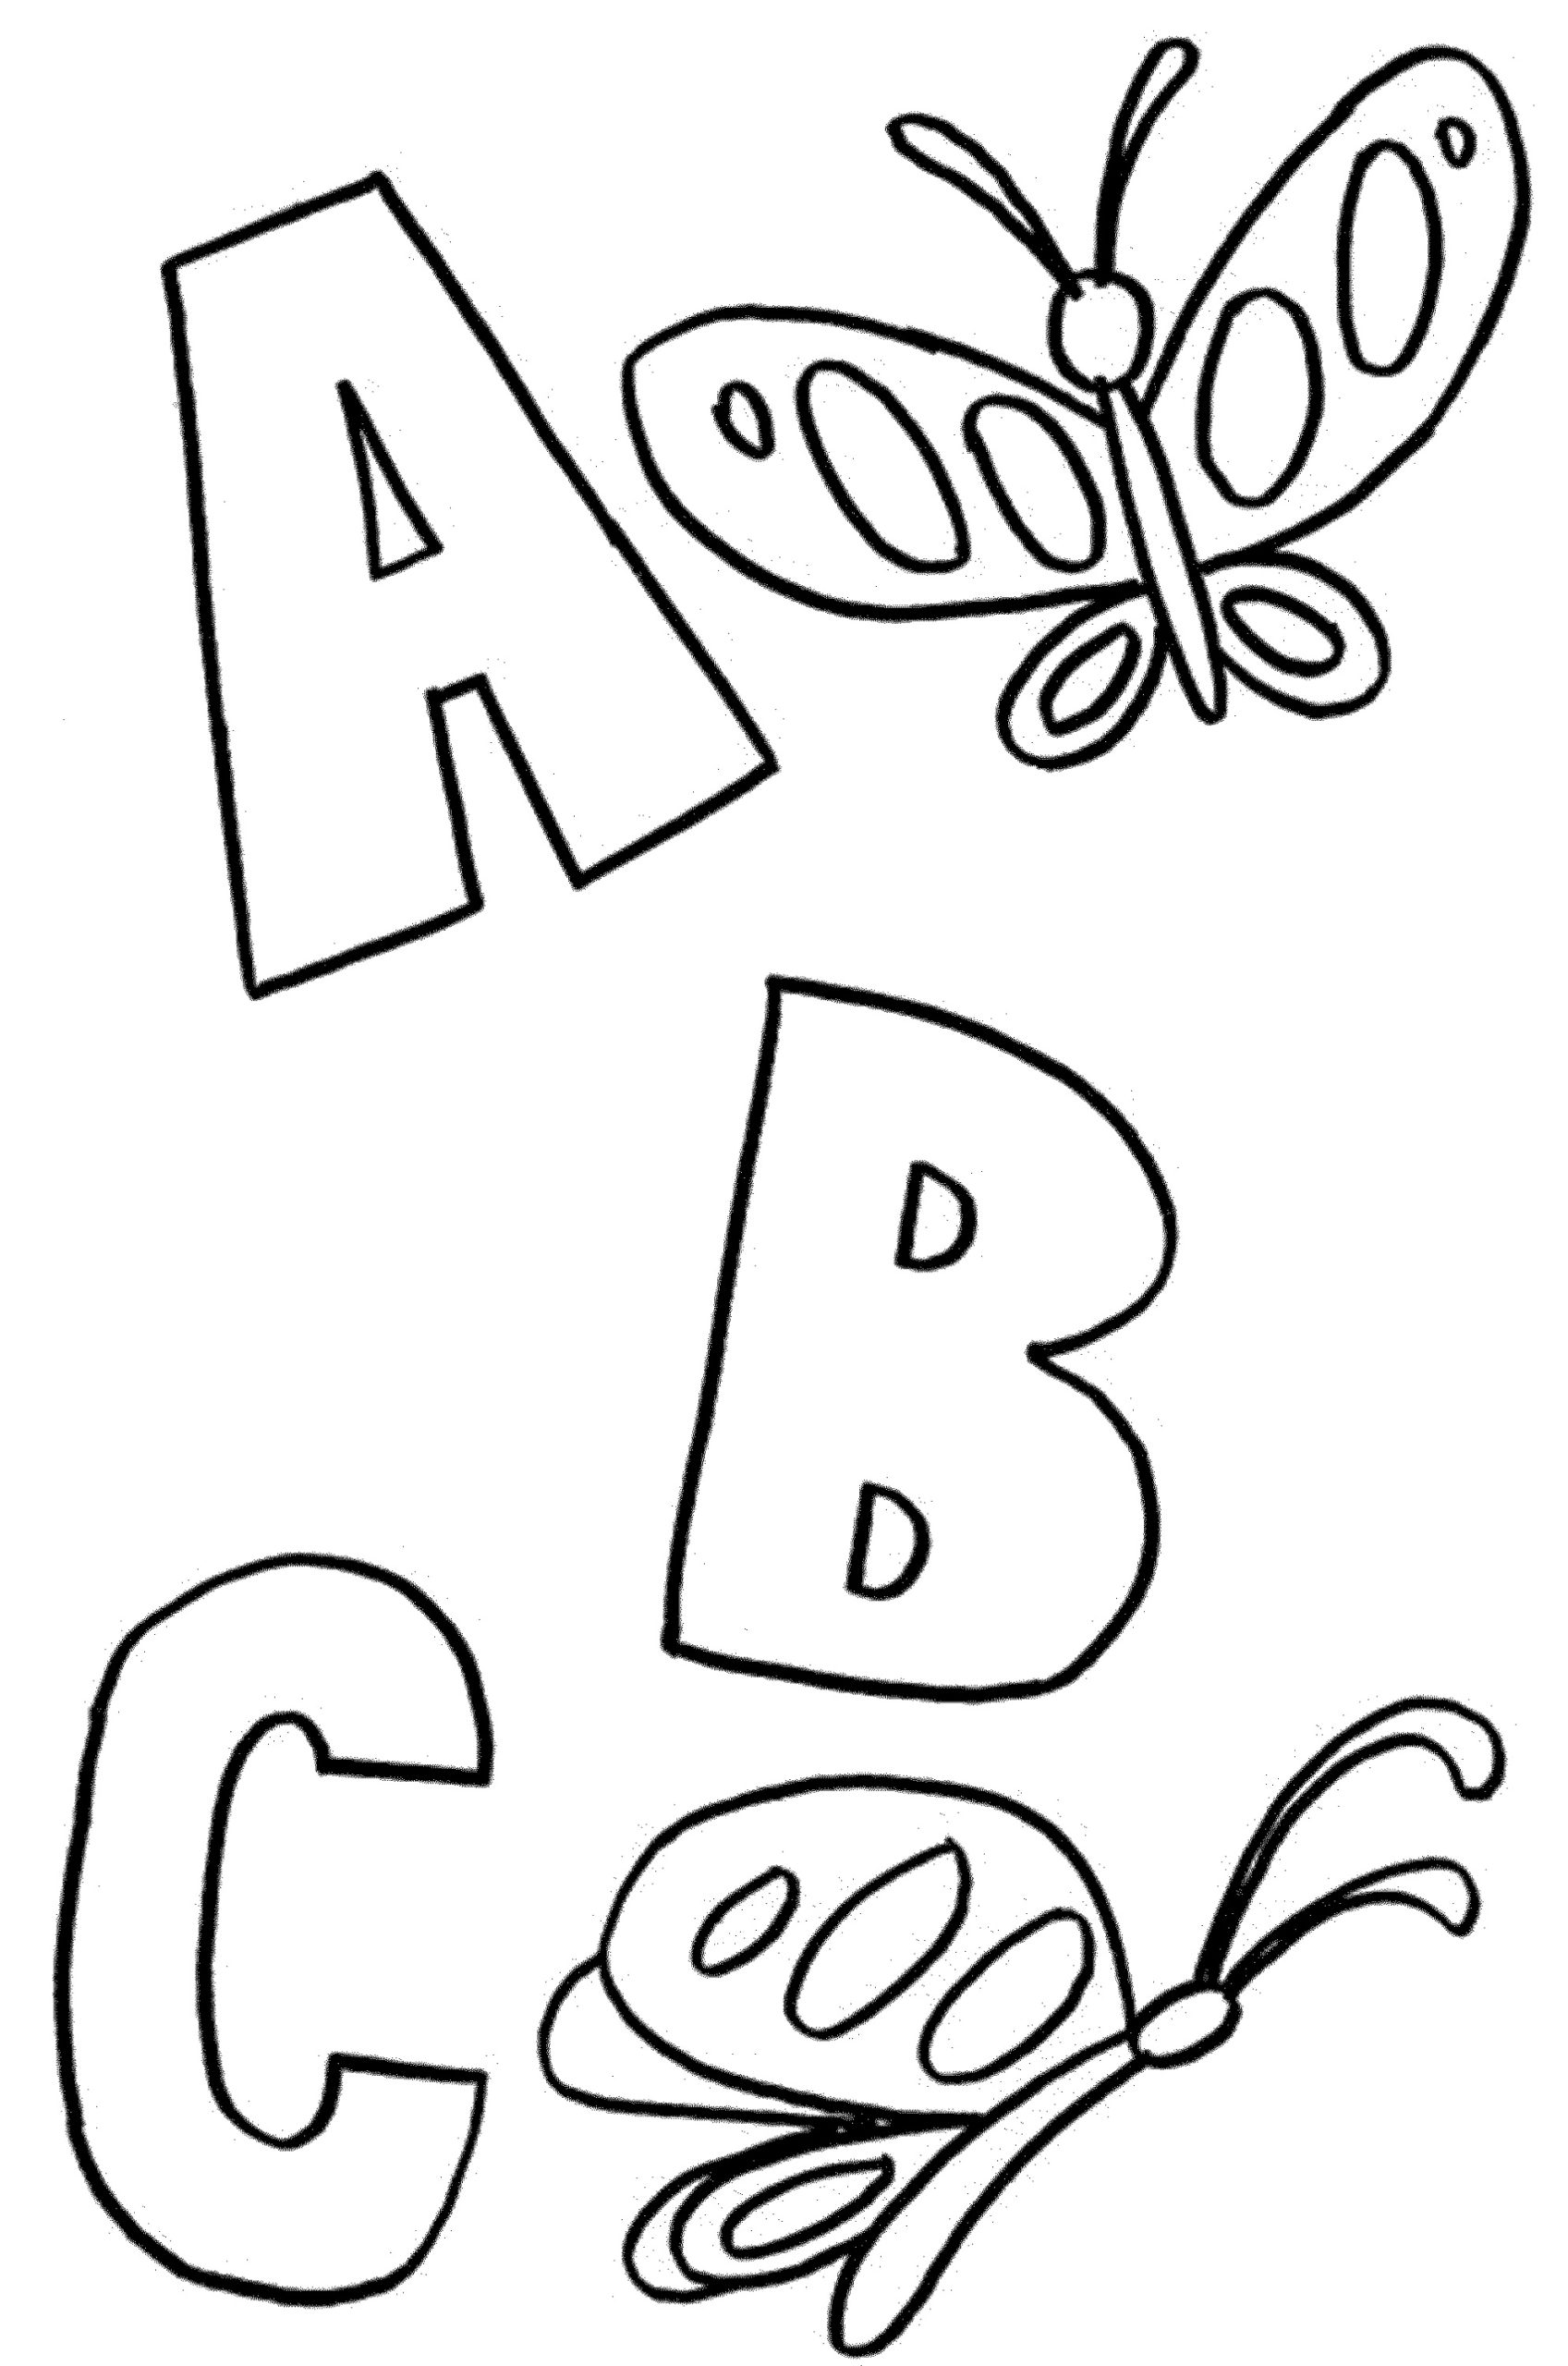 Preschool Coloring Pages Alphabet Abc